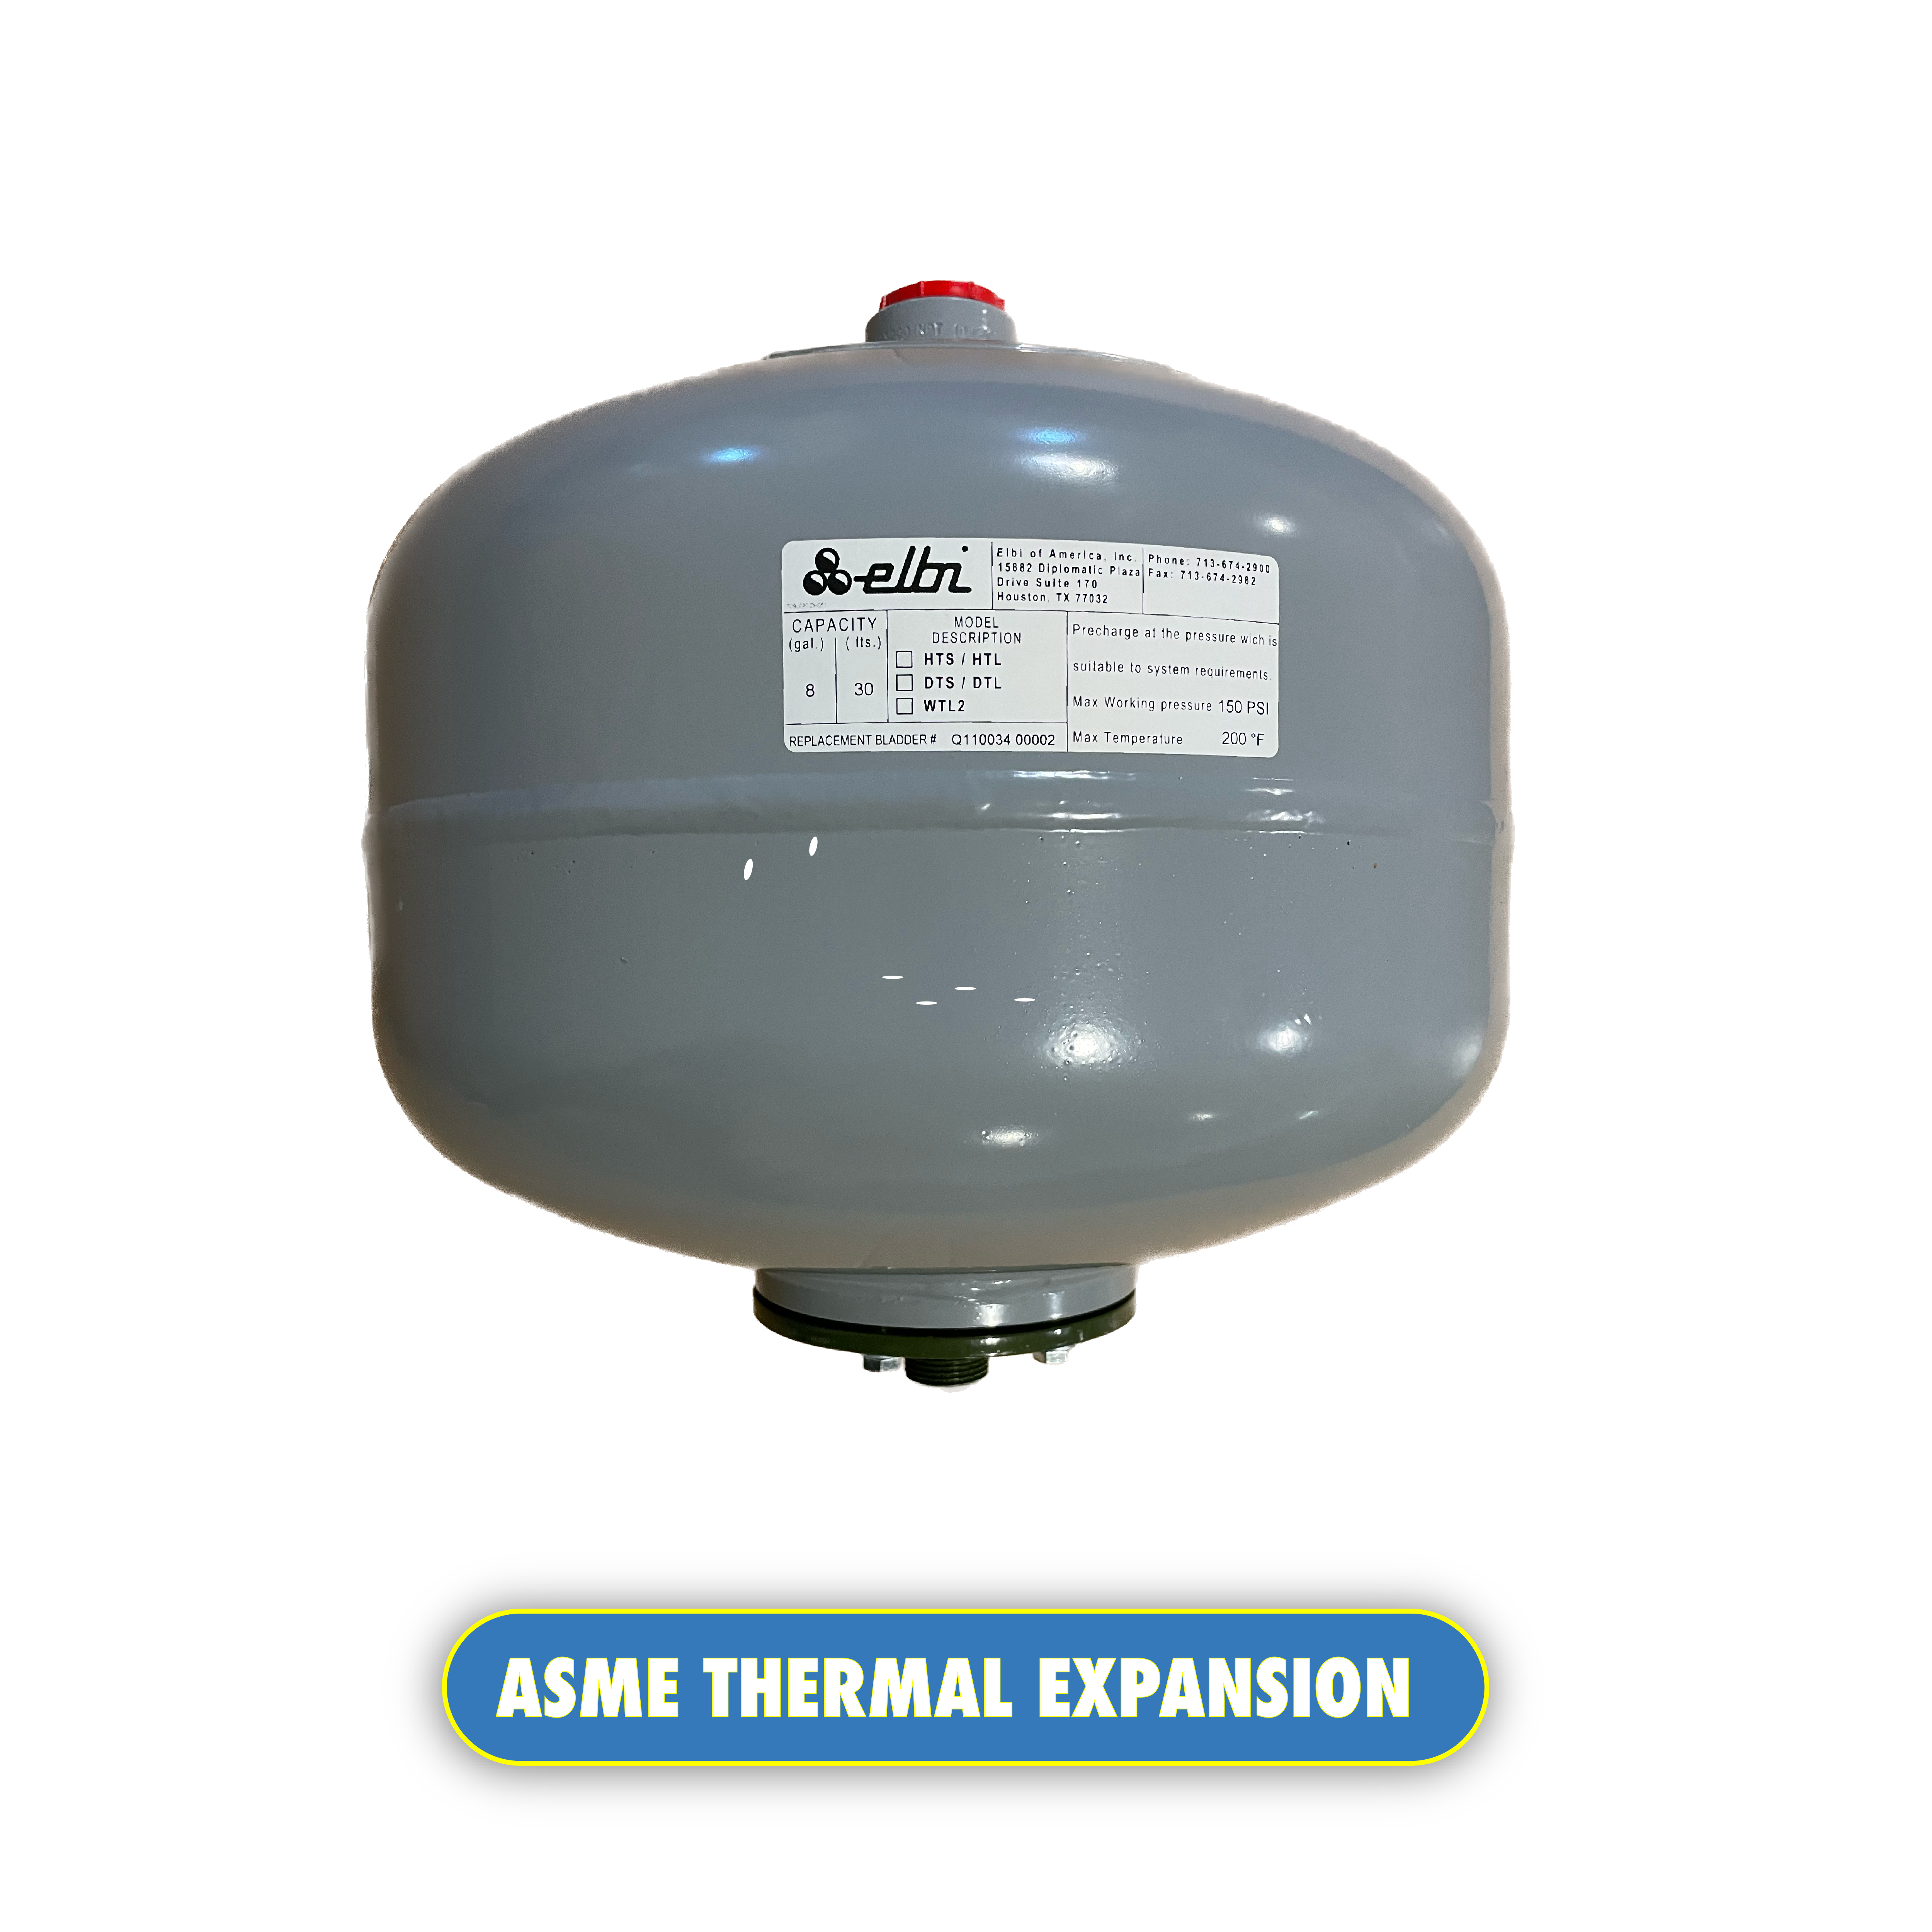 ASME Thermal expansion tanks